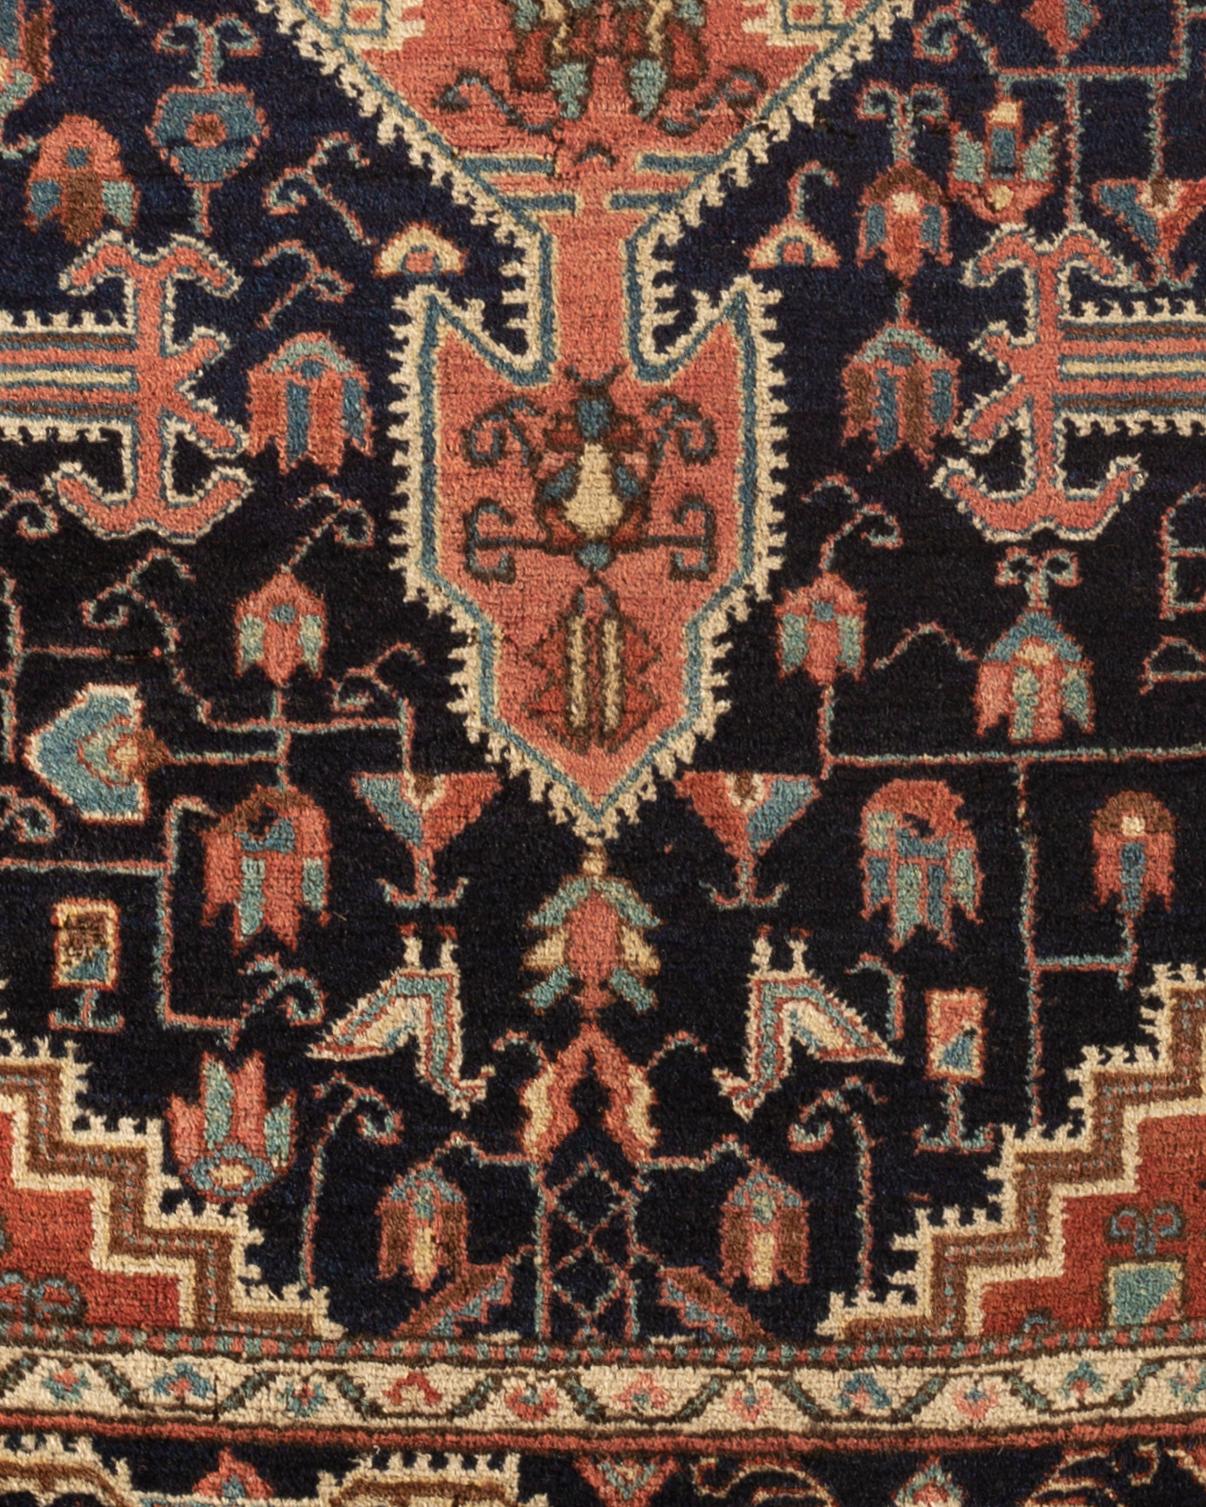 Antiker Josan-Sarouk-Teppich, um 1900. Sarouk-Teppiche stammen aus West-Zentralpersien und Josan ist ein kleines Dorf, das für die hohe Qualität seiner Teppiche bekannt ist. Das reizvolle zentrale Design mit seinem tiefen Marineblau sowohl im